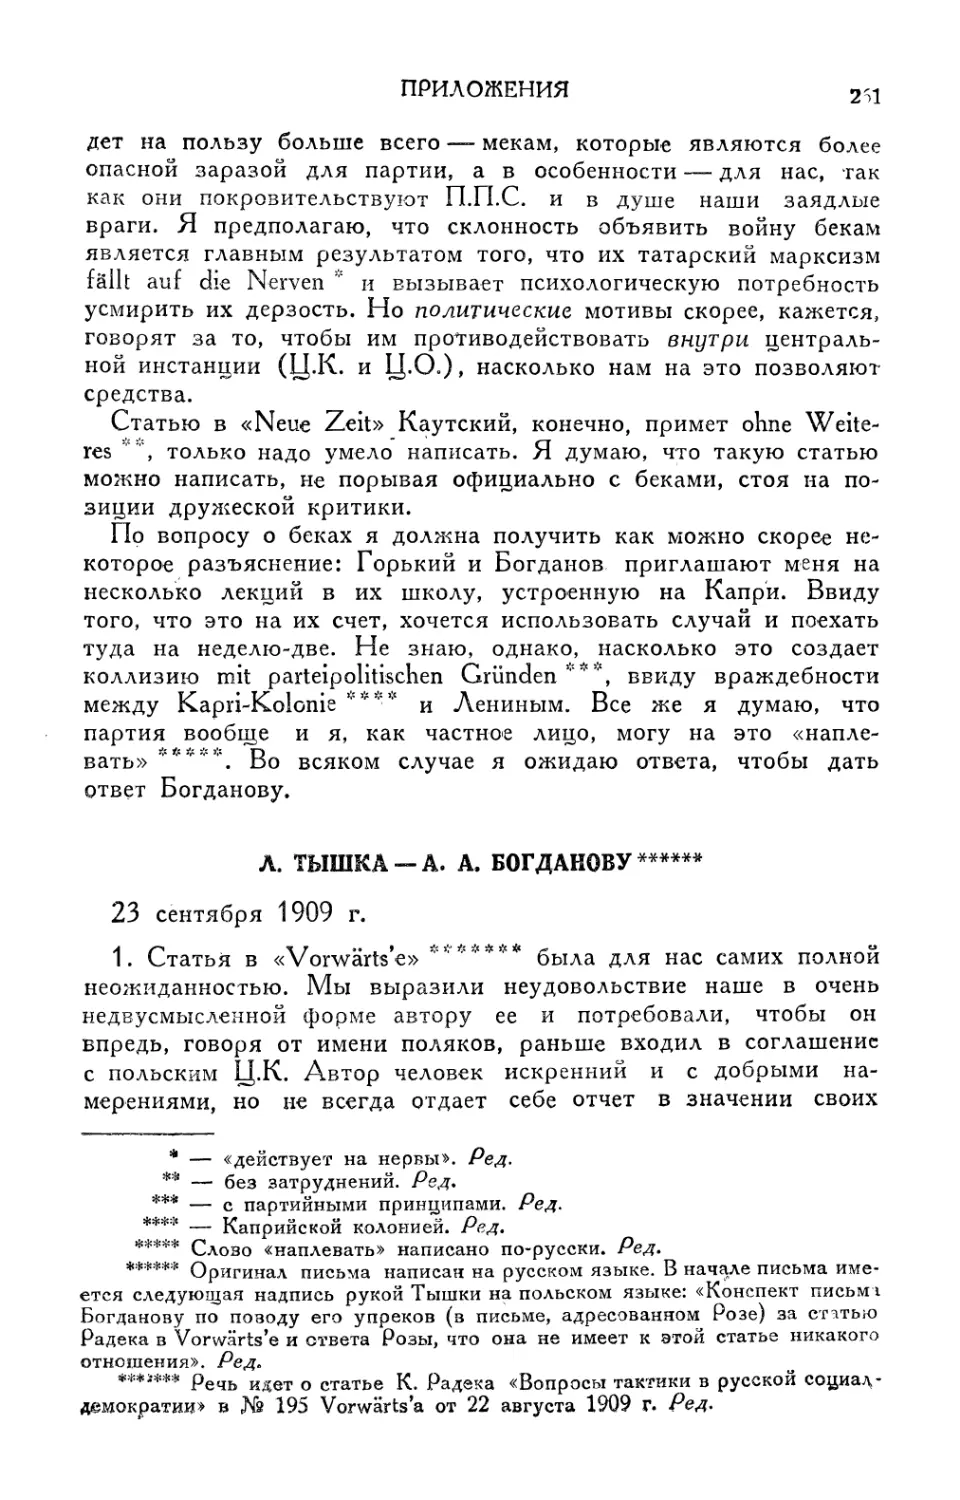 Л. Тышка — А. А. Богданову — 23 сентября 1909 г.